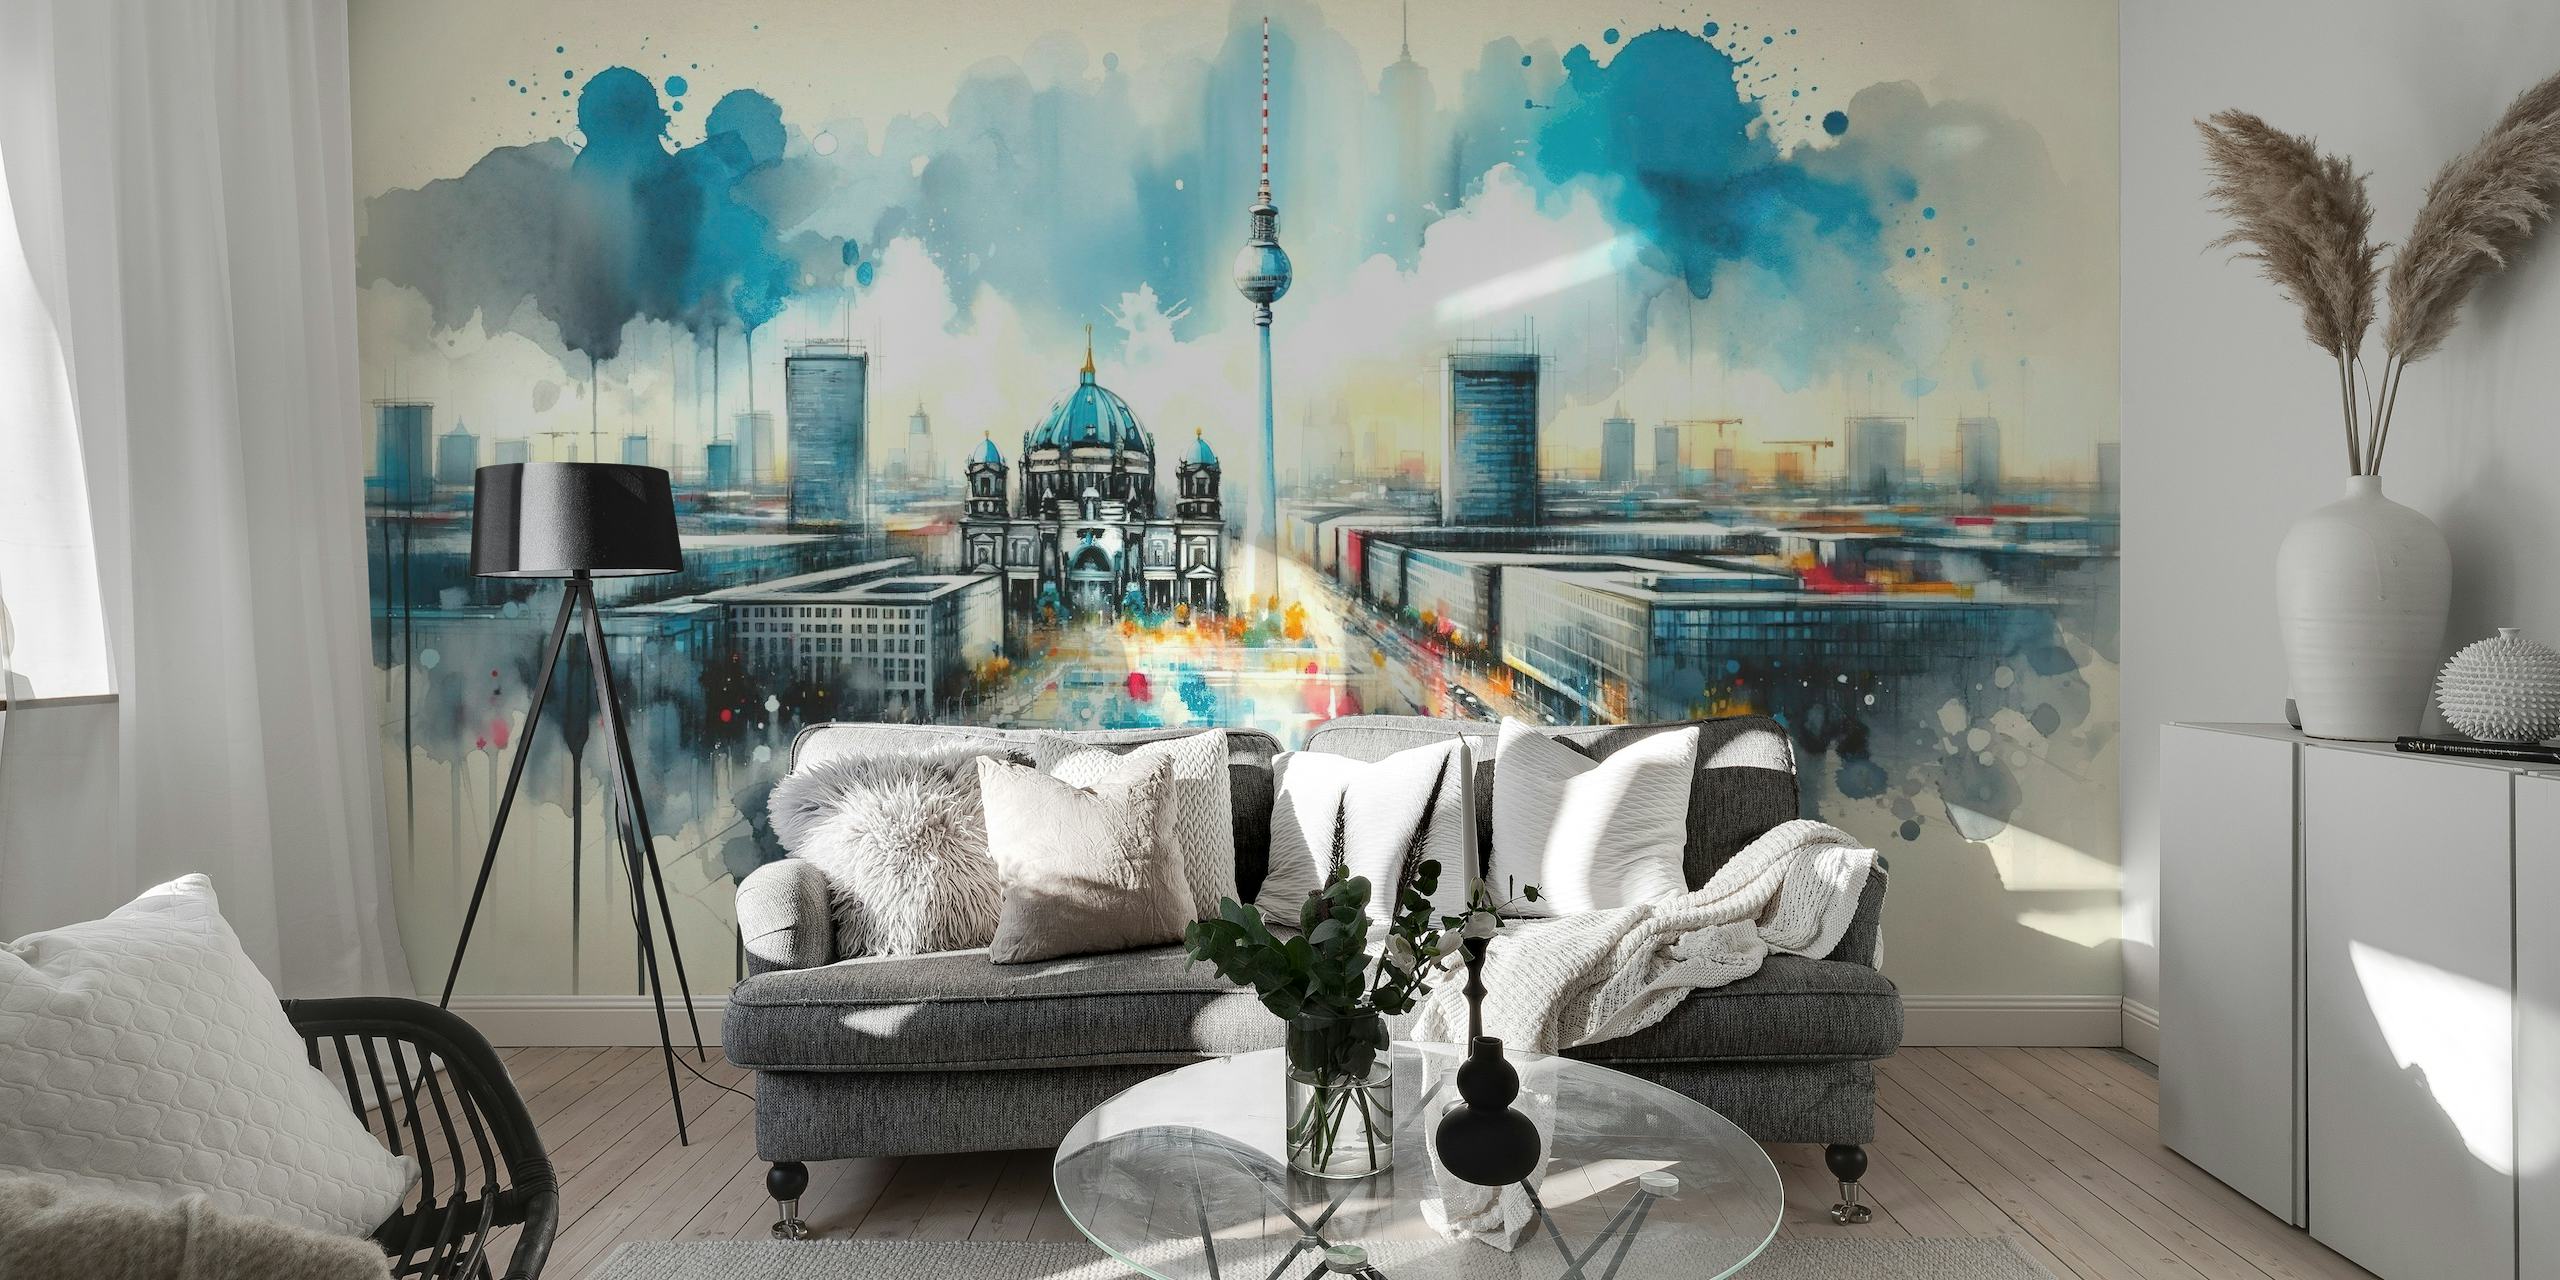 Akvarelová nástěnná malba berlínské moderní architektury s ikonickými památkami a dynamickou uměleckou interpretací.